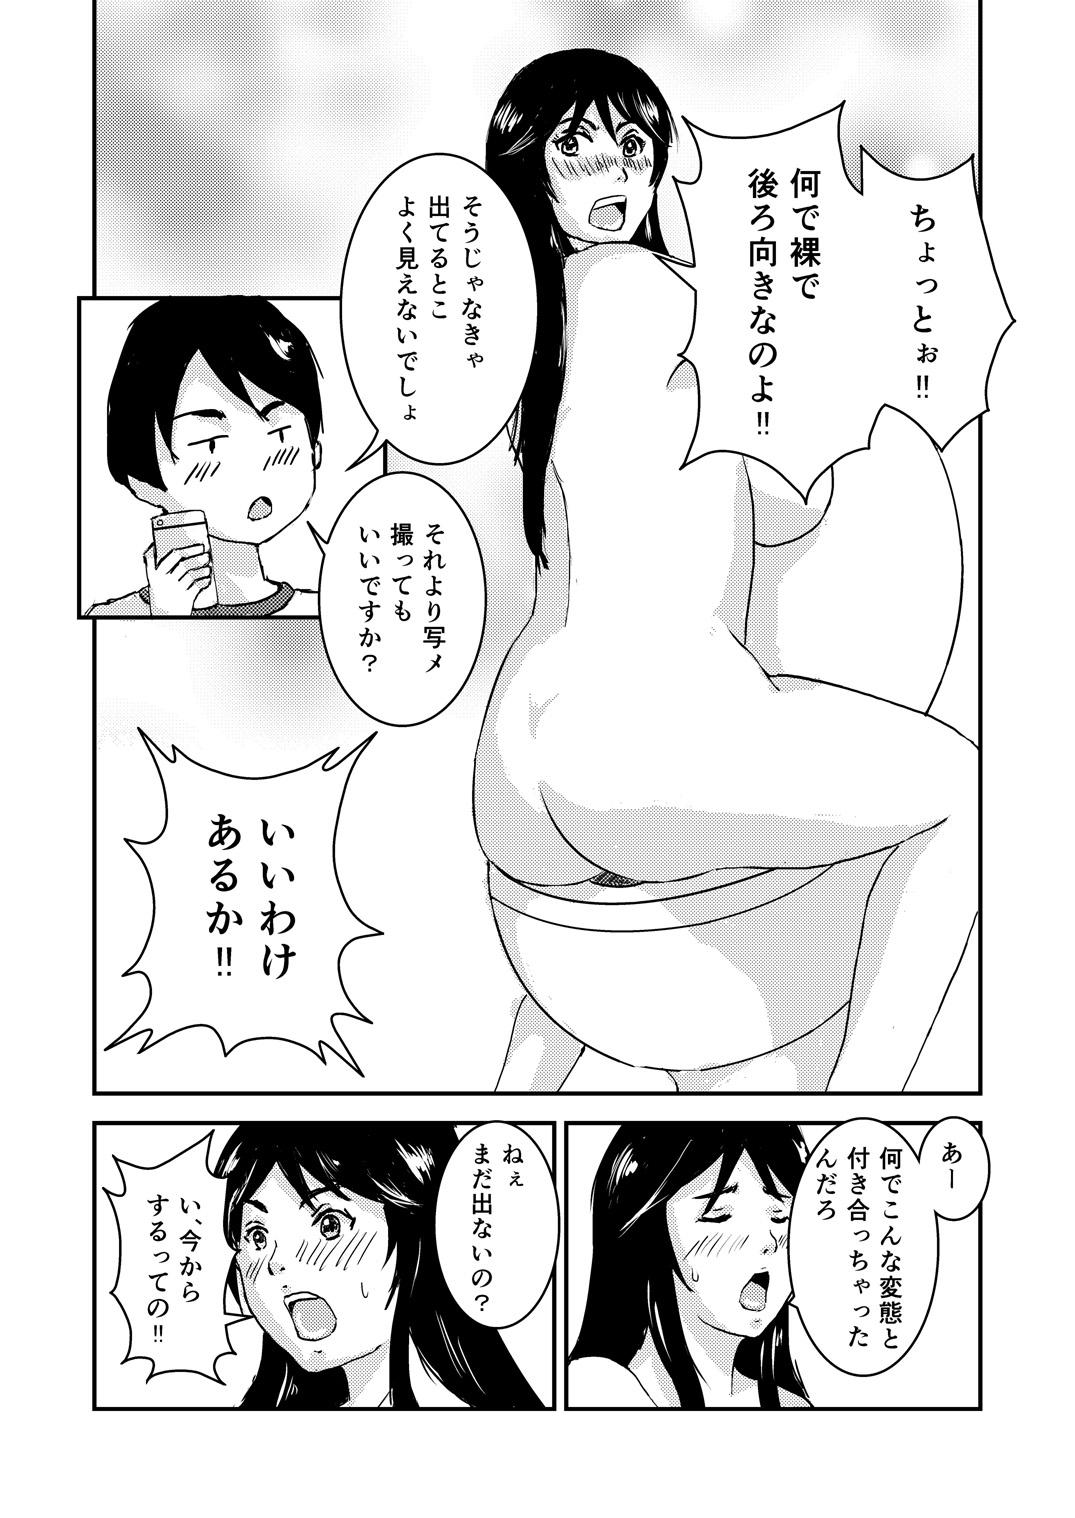 Phat Ass Kanojo wa Tanomi o Kotowarenai Closeup - Page 4